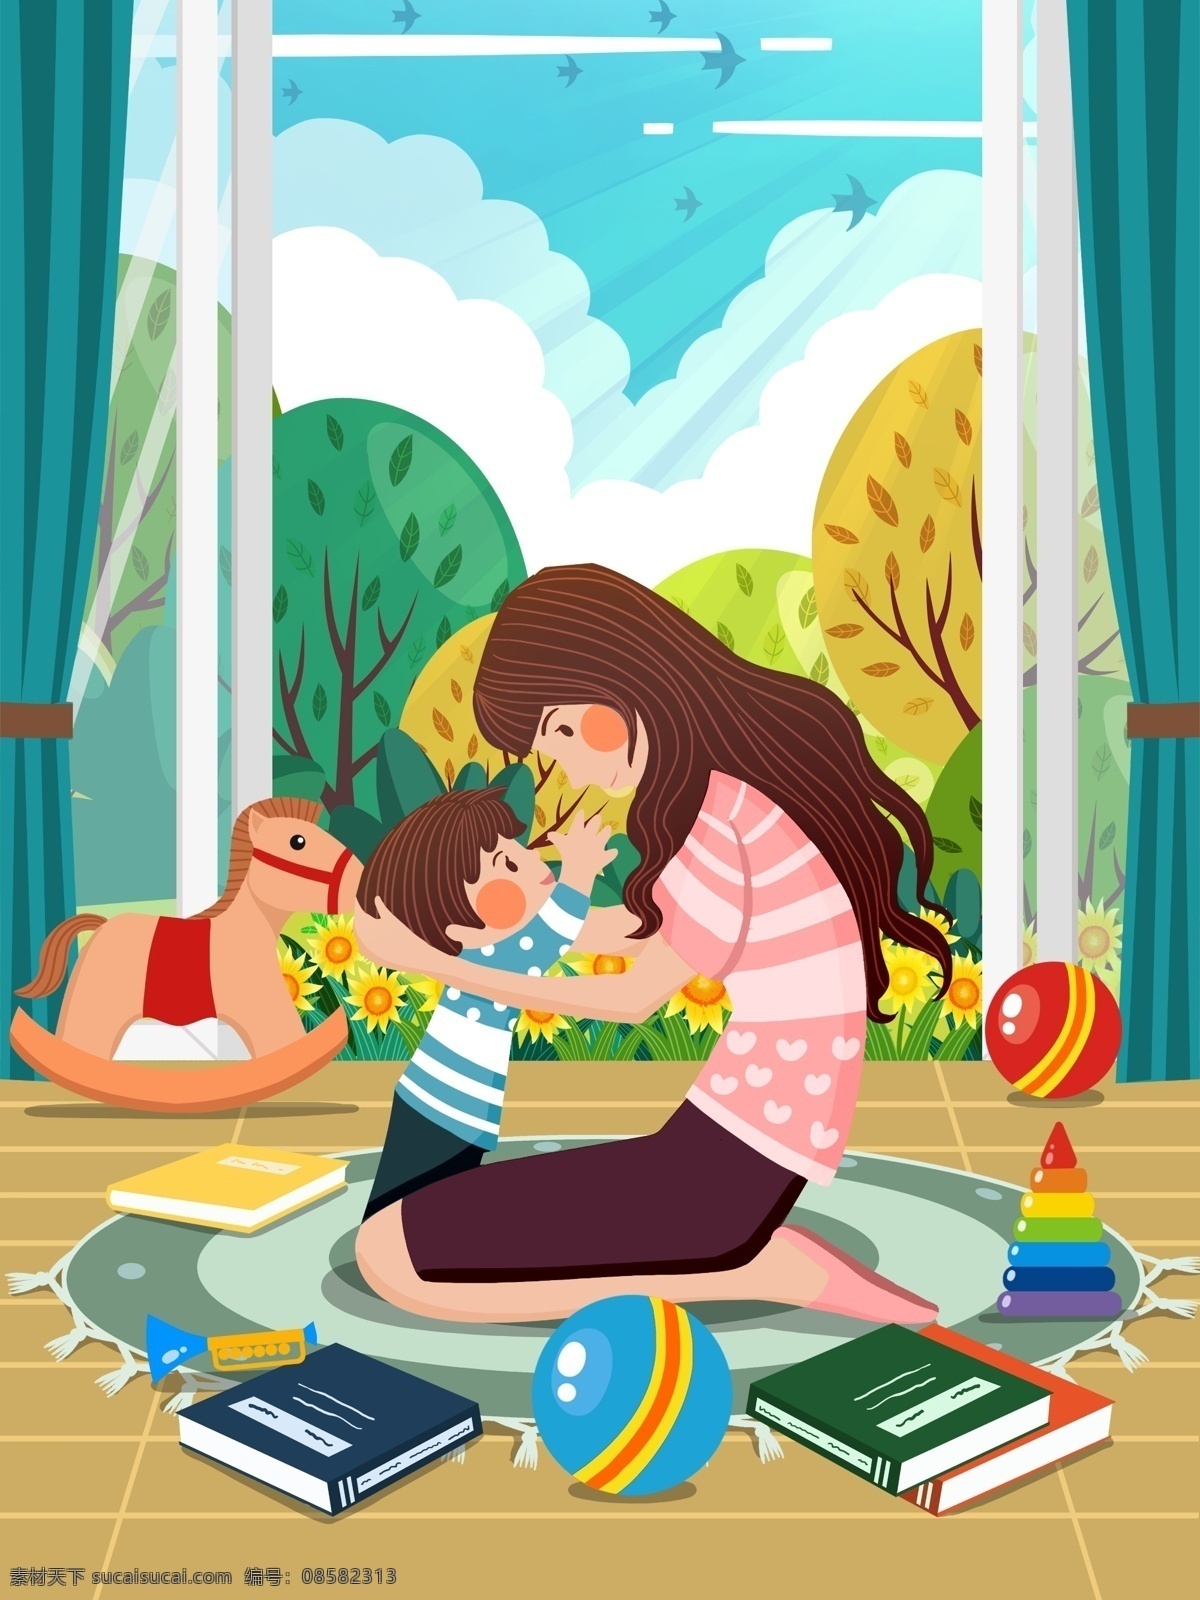 世界 幸福 日 男孩 拥抱 母亲 温馨 场景 插画 世界幸福日 女人 植物 阳光 云 鸟 木马 书 窗帘 球 地毯 花 壁纸 包装 配图